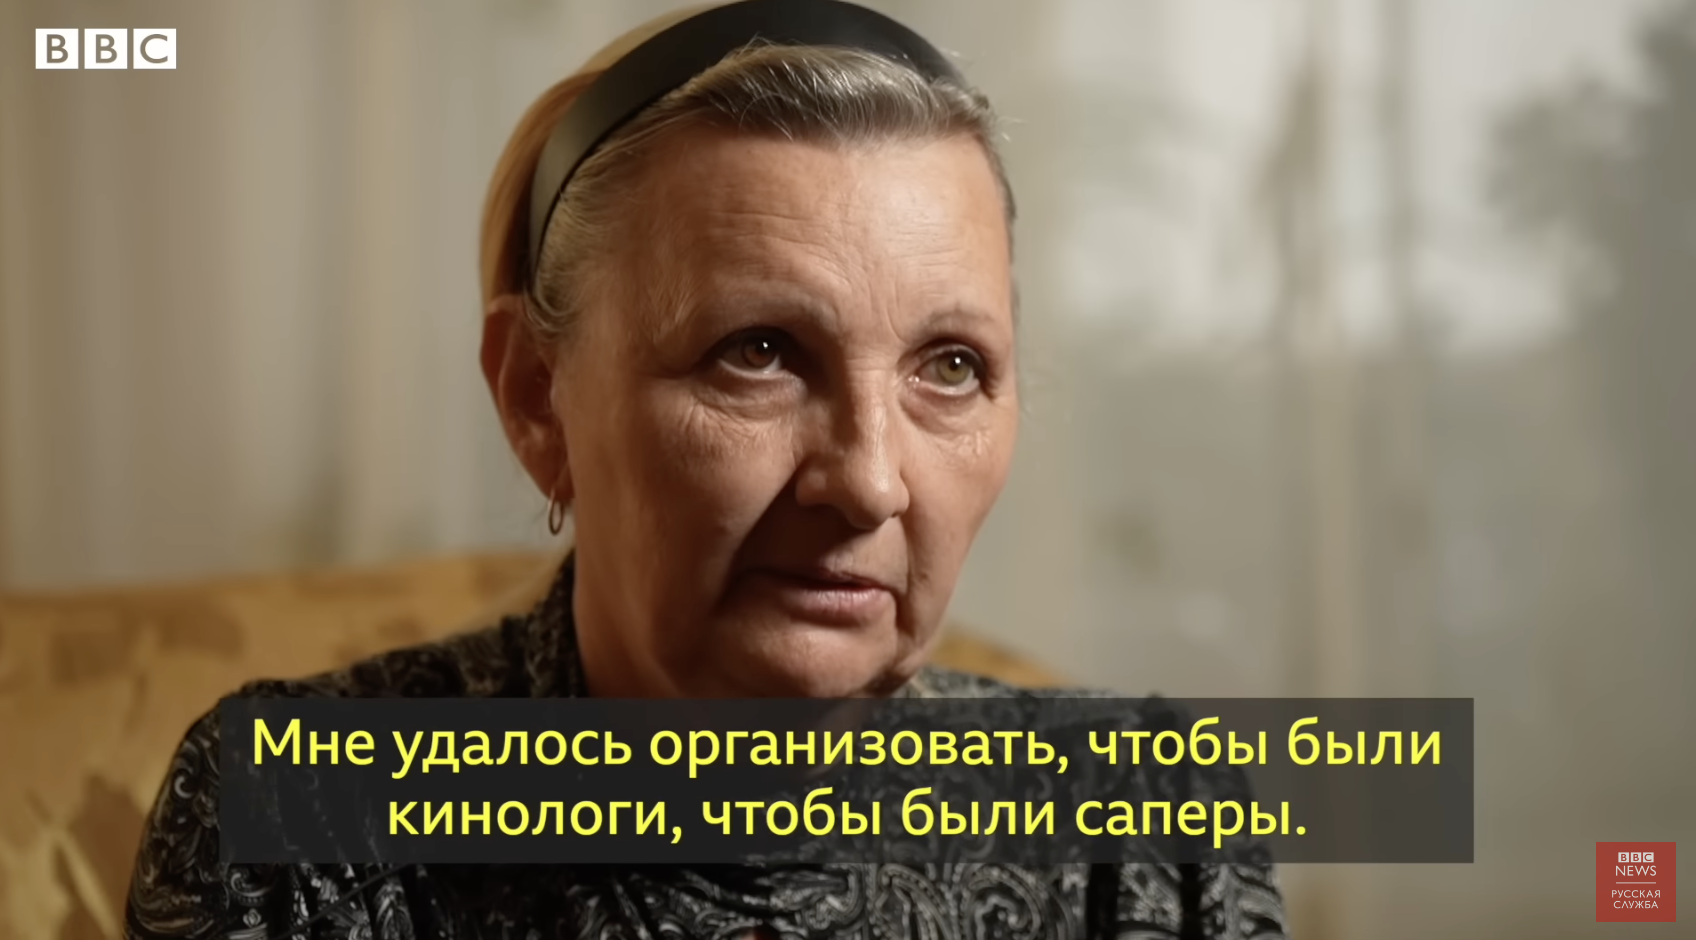 ''Вывезла тело в багажнике авто'': матери погибших защитников Украины рассказали, как искали их. Видео